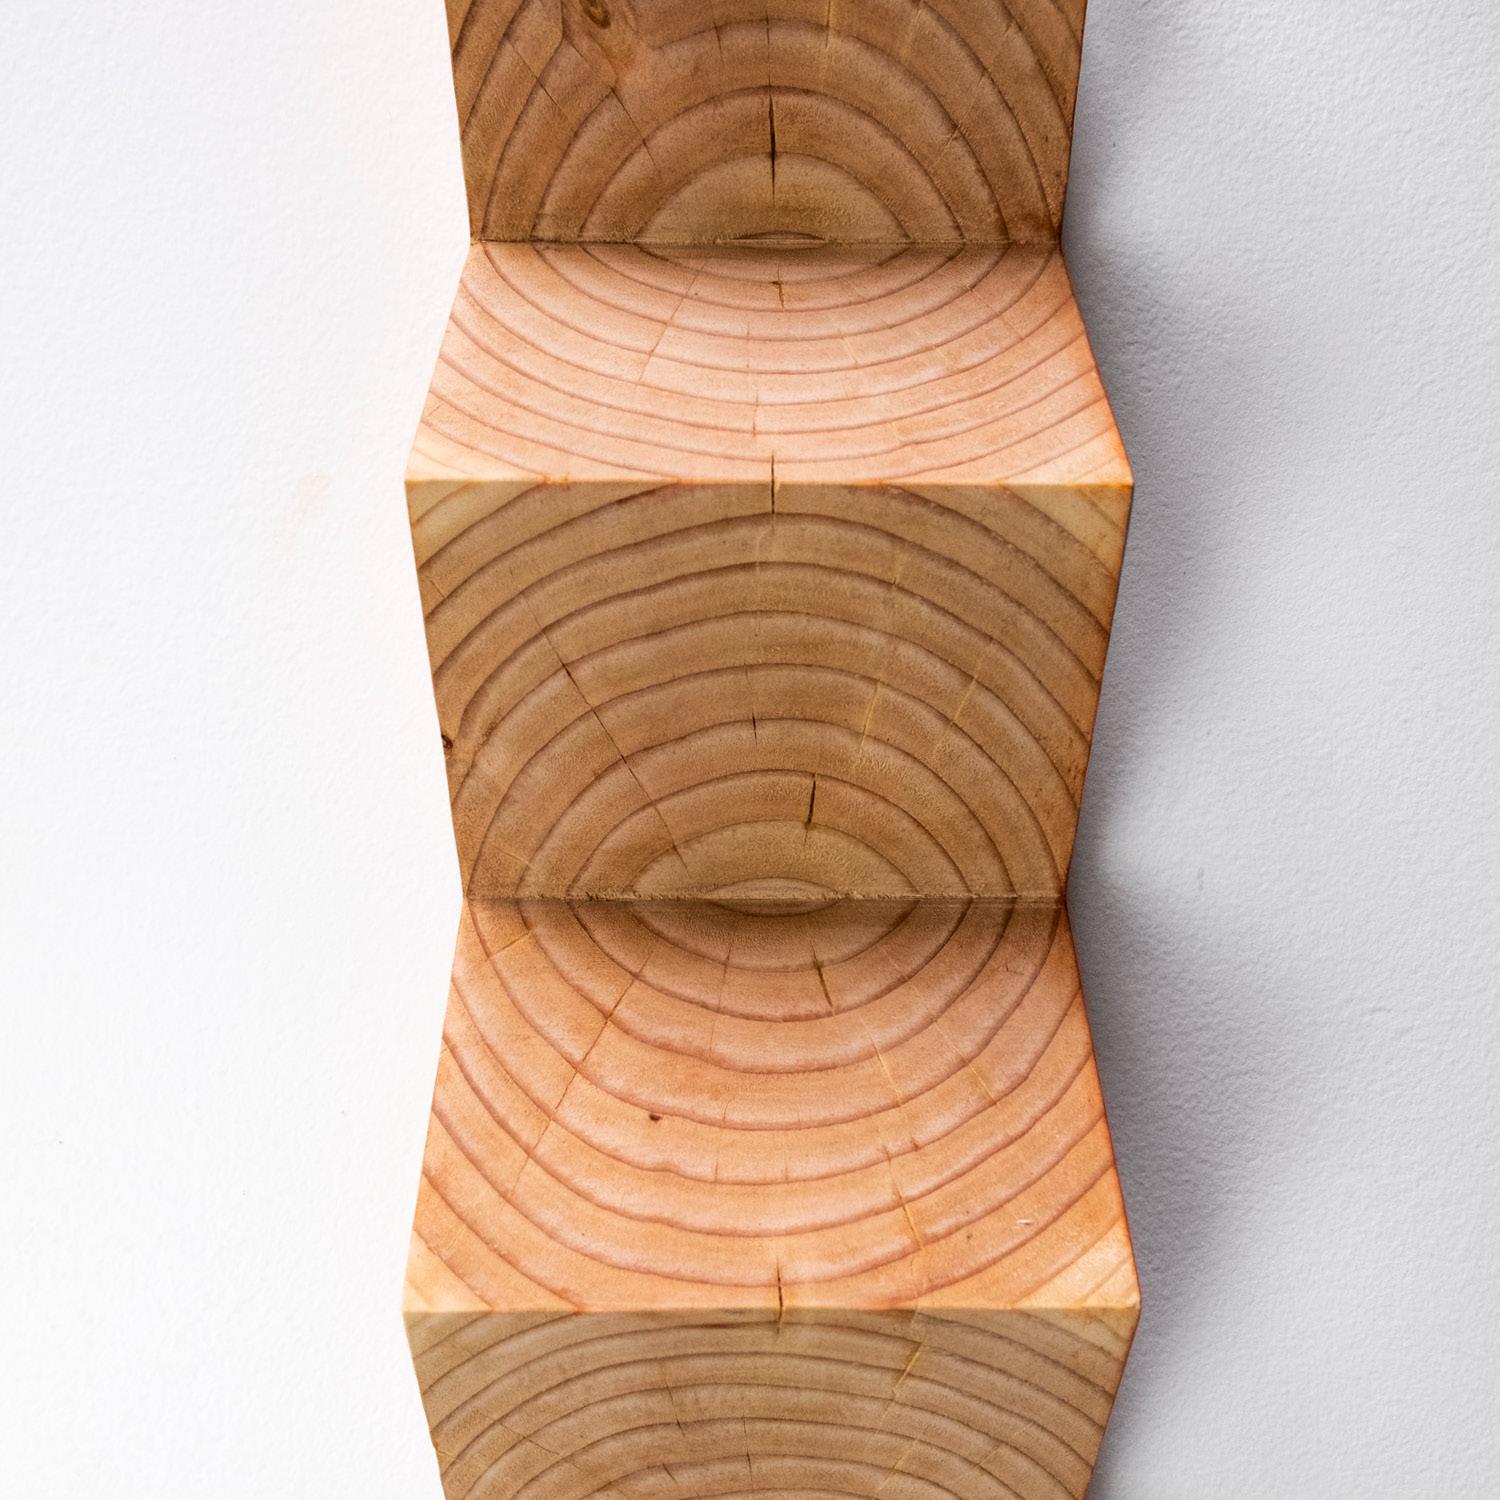 Woodwork Waveform Carved Zig Zag Sculpture by Bradley Duncan Studio For Sale